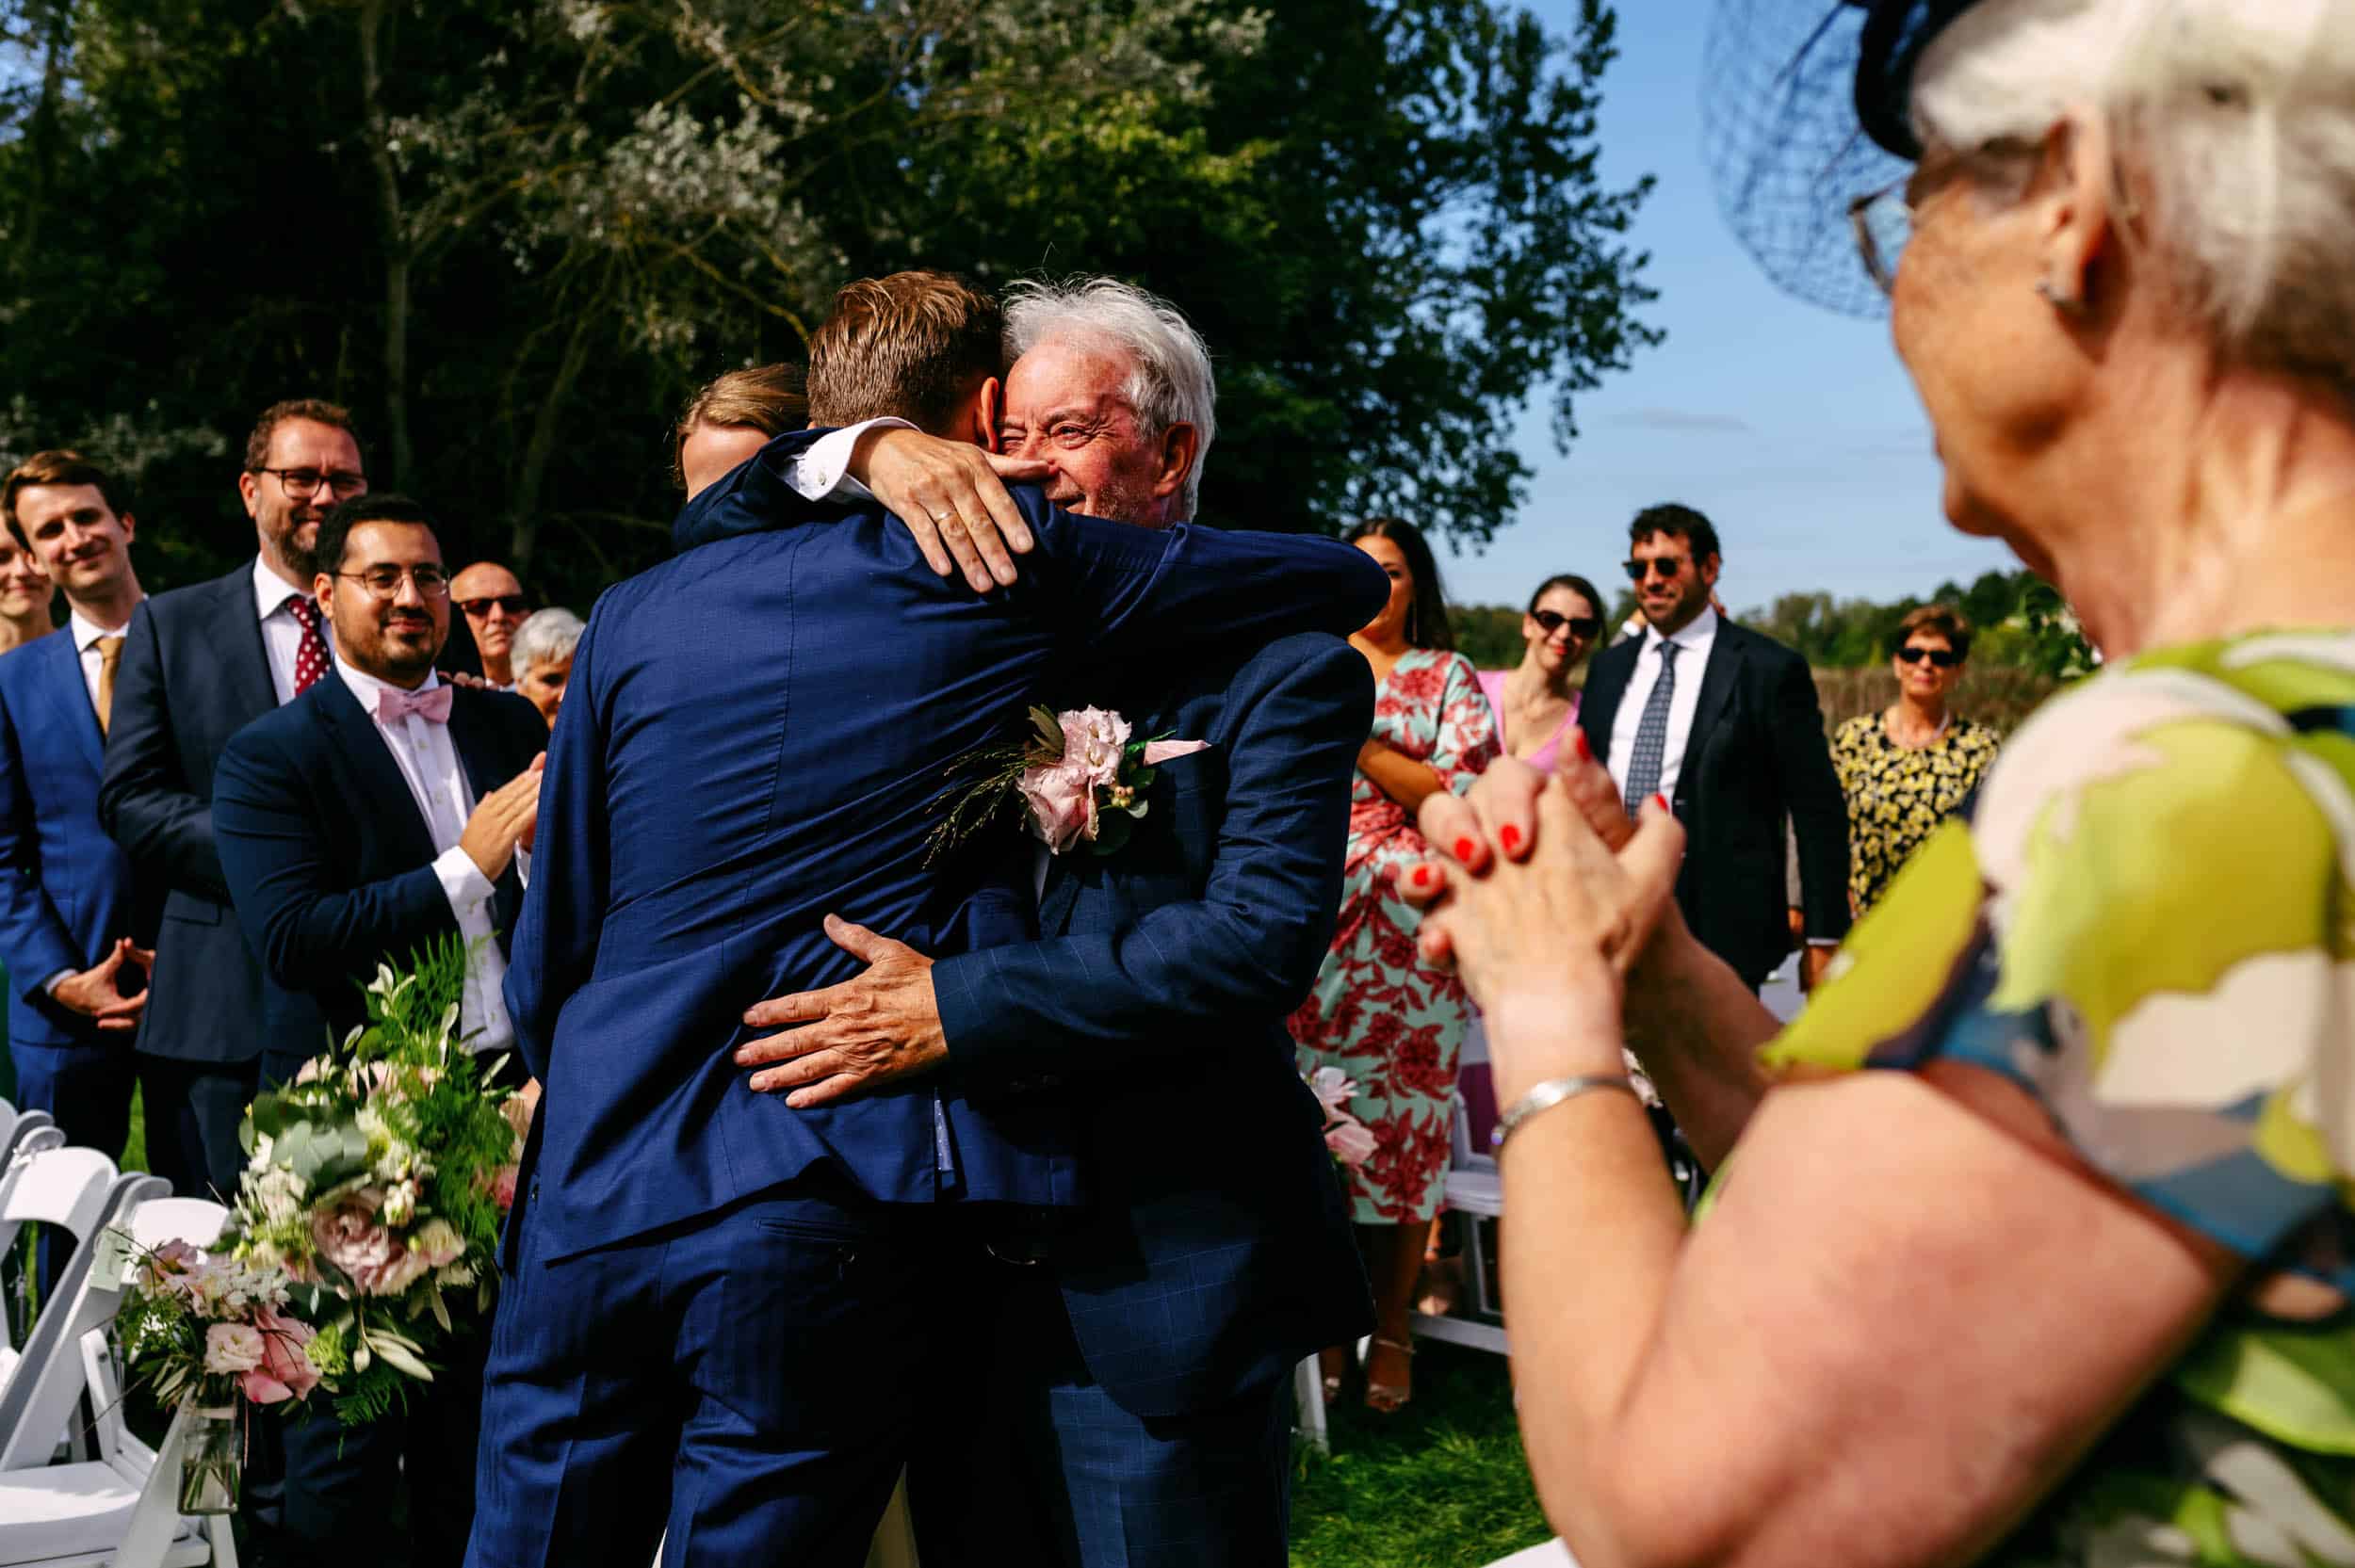 Een man knuffelt vader tijdens een Trouwfoto bij de perfecte huwelijksceremonie.